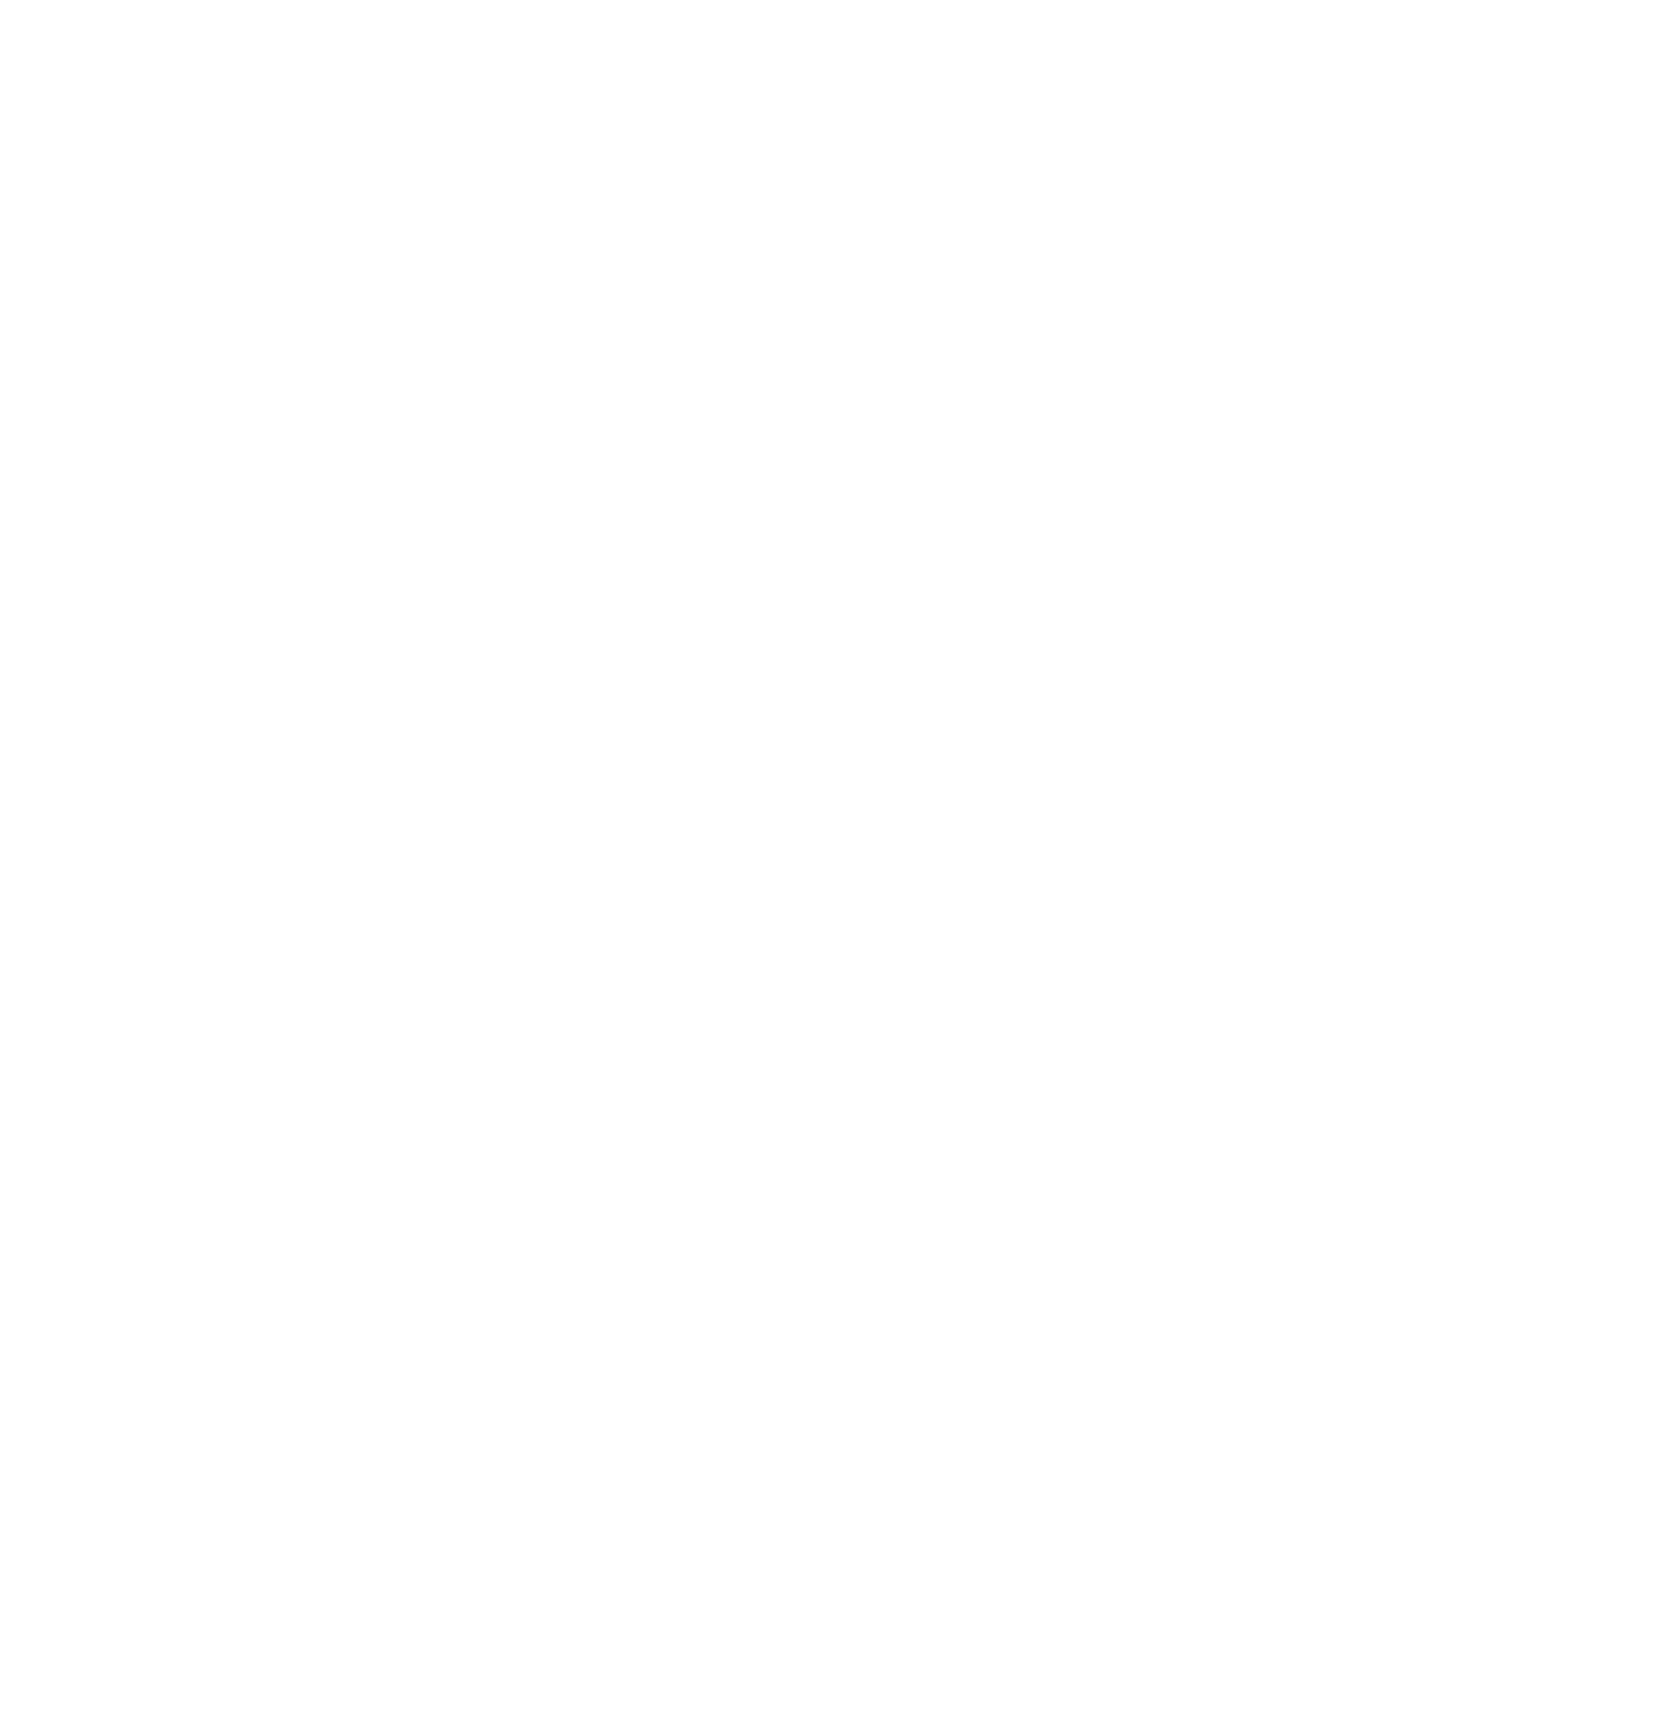 Shell Island Ferry